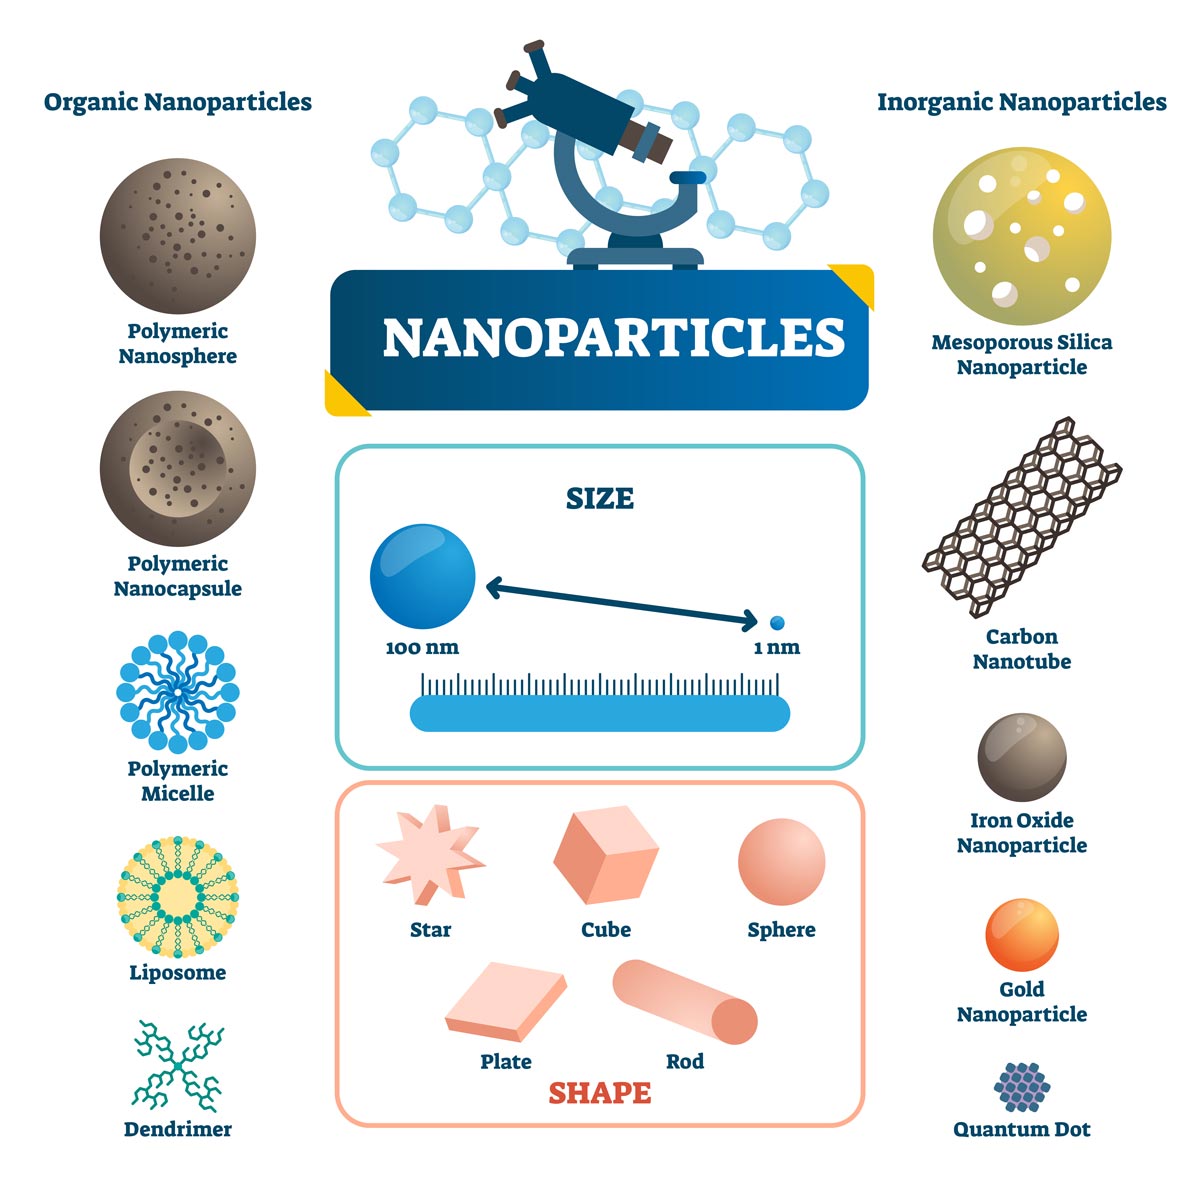 有機ナノ粒子と無機ナノ粒子のサイズ、形、材料を示した図